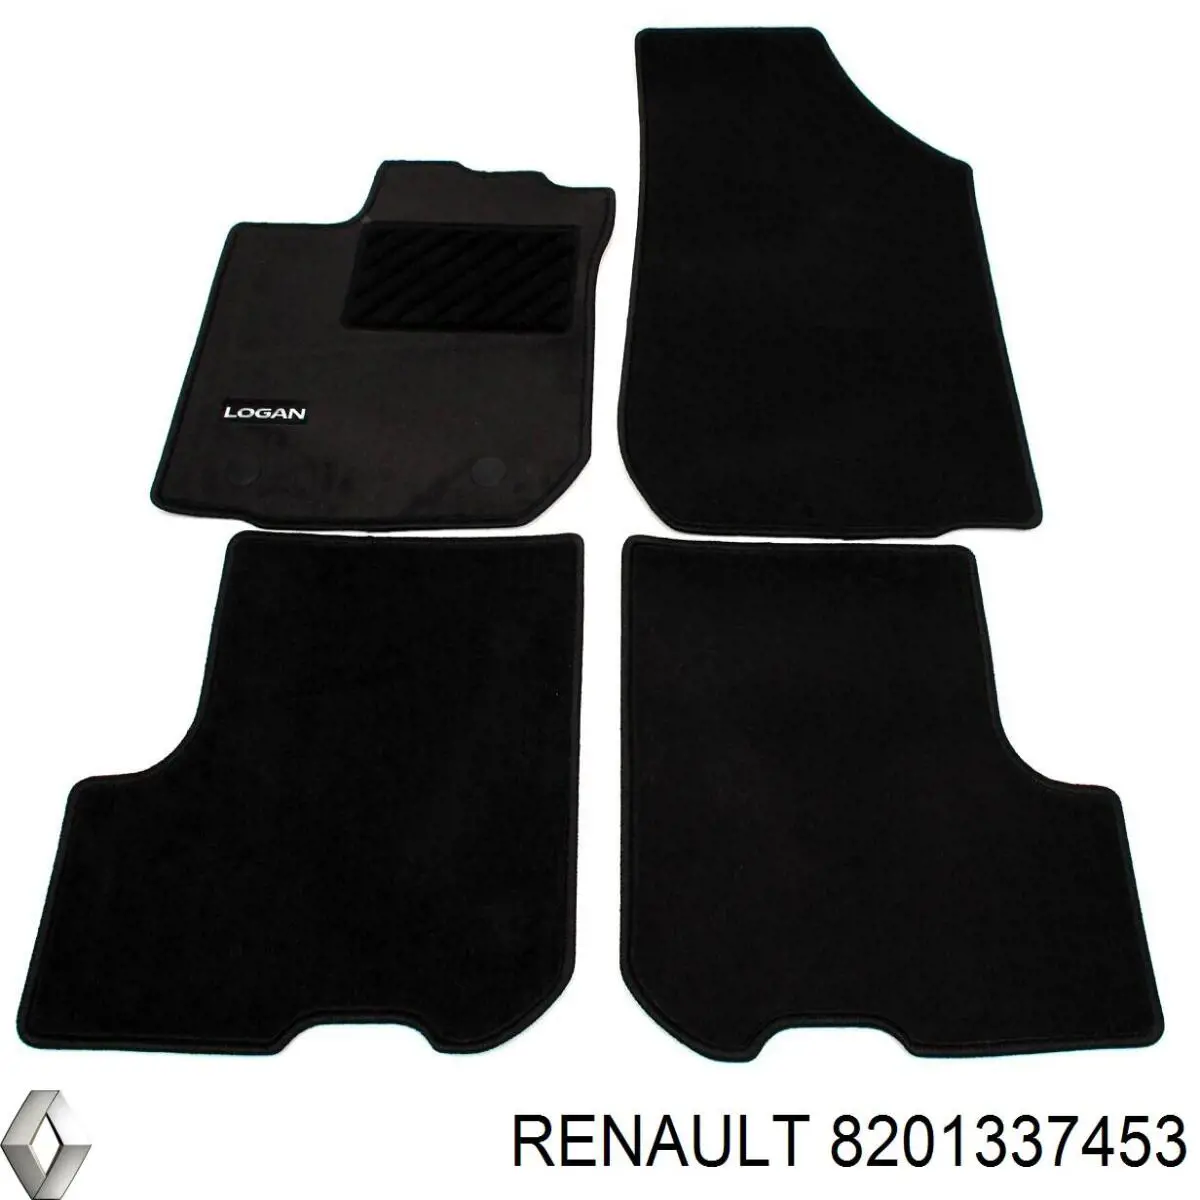 8201337453 Renault (RVI) килимок передні + задні, комплект на авто